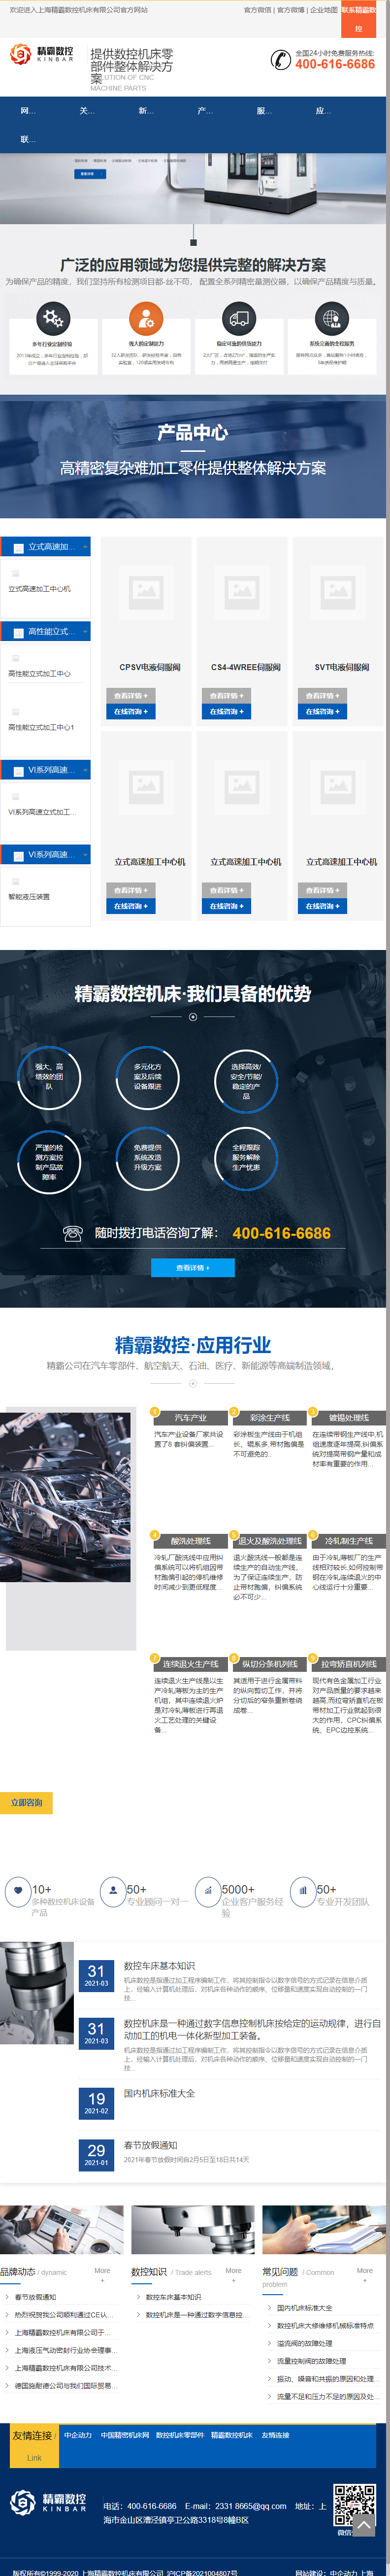 上海精霸数控机床有限公司网站案例